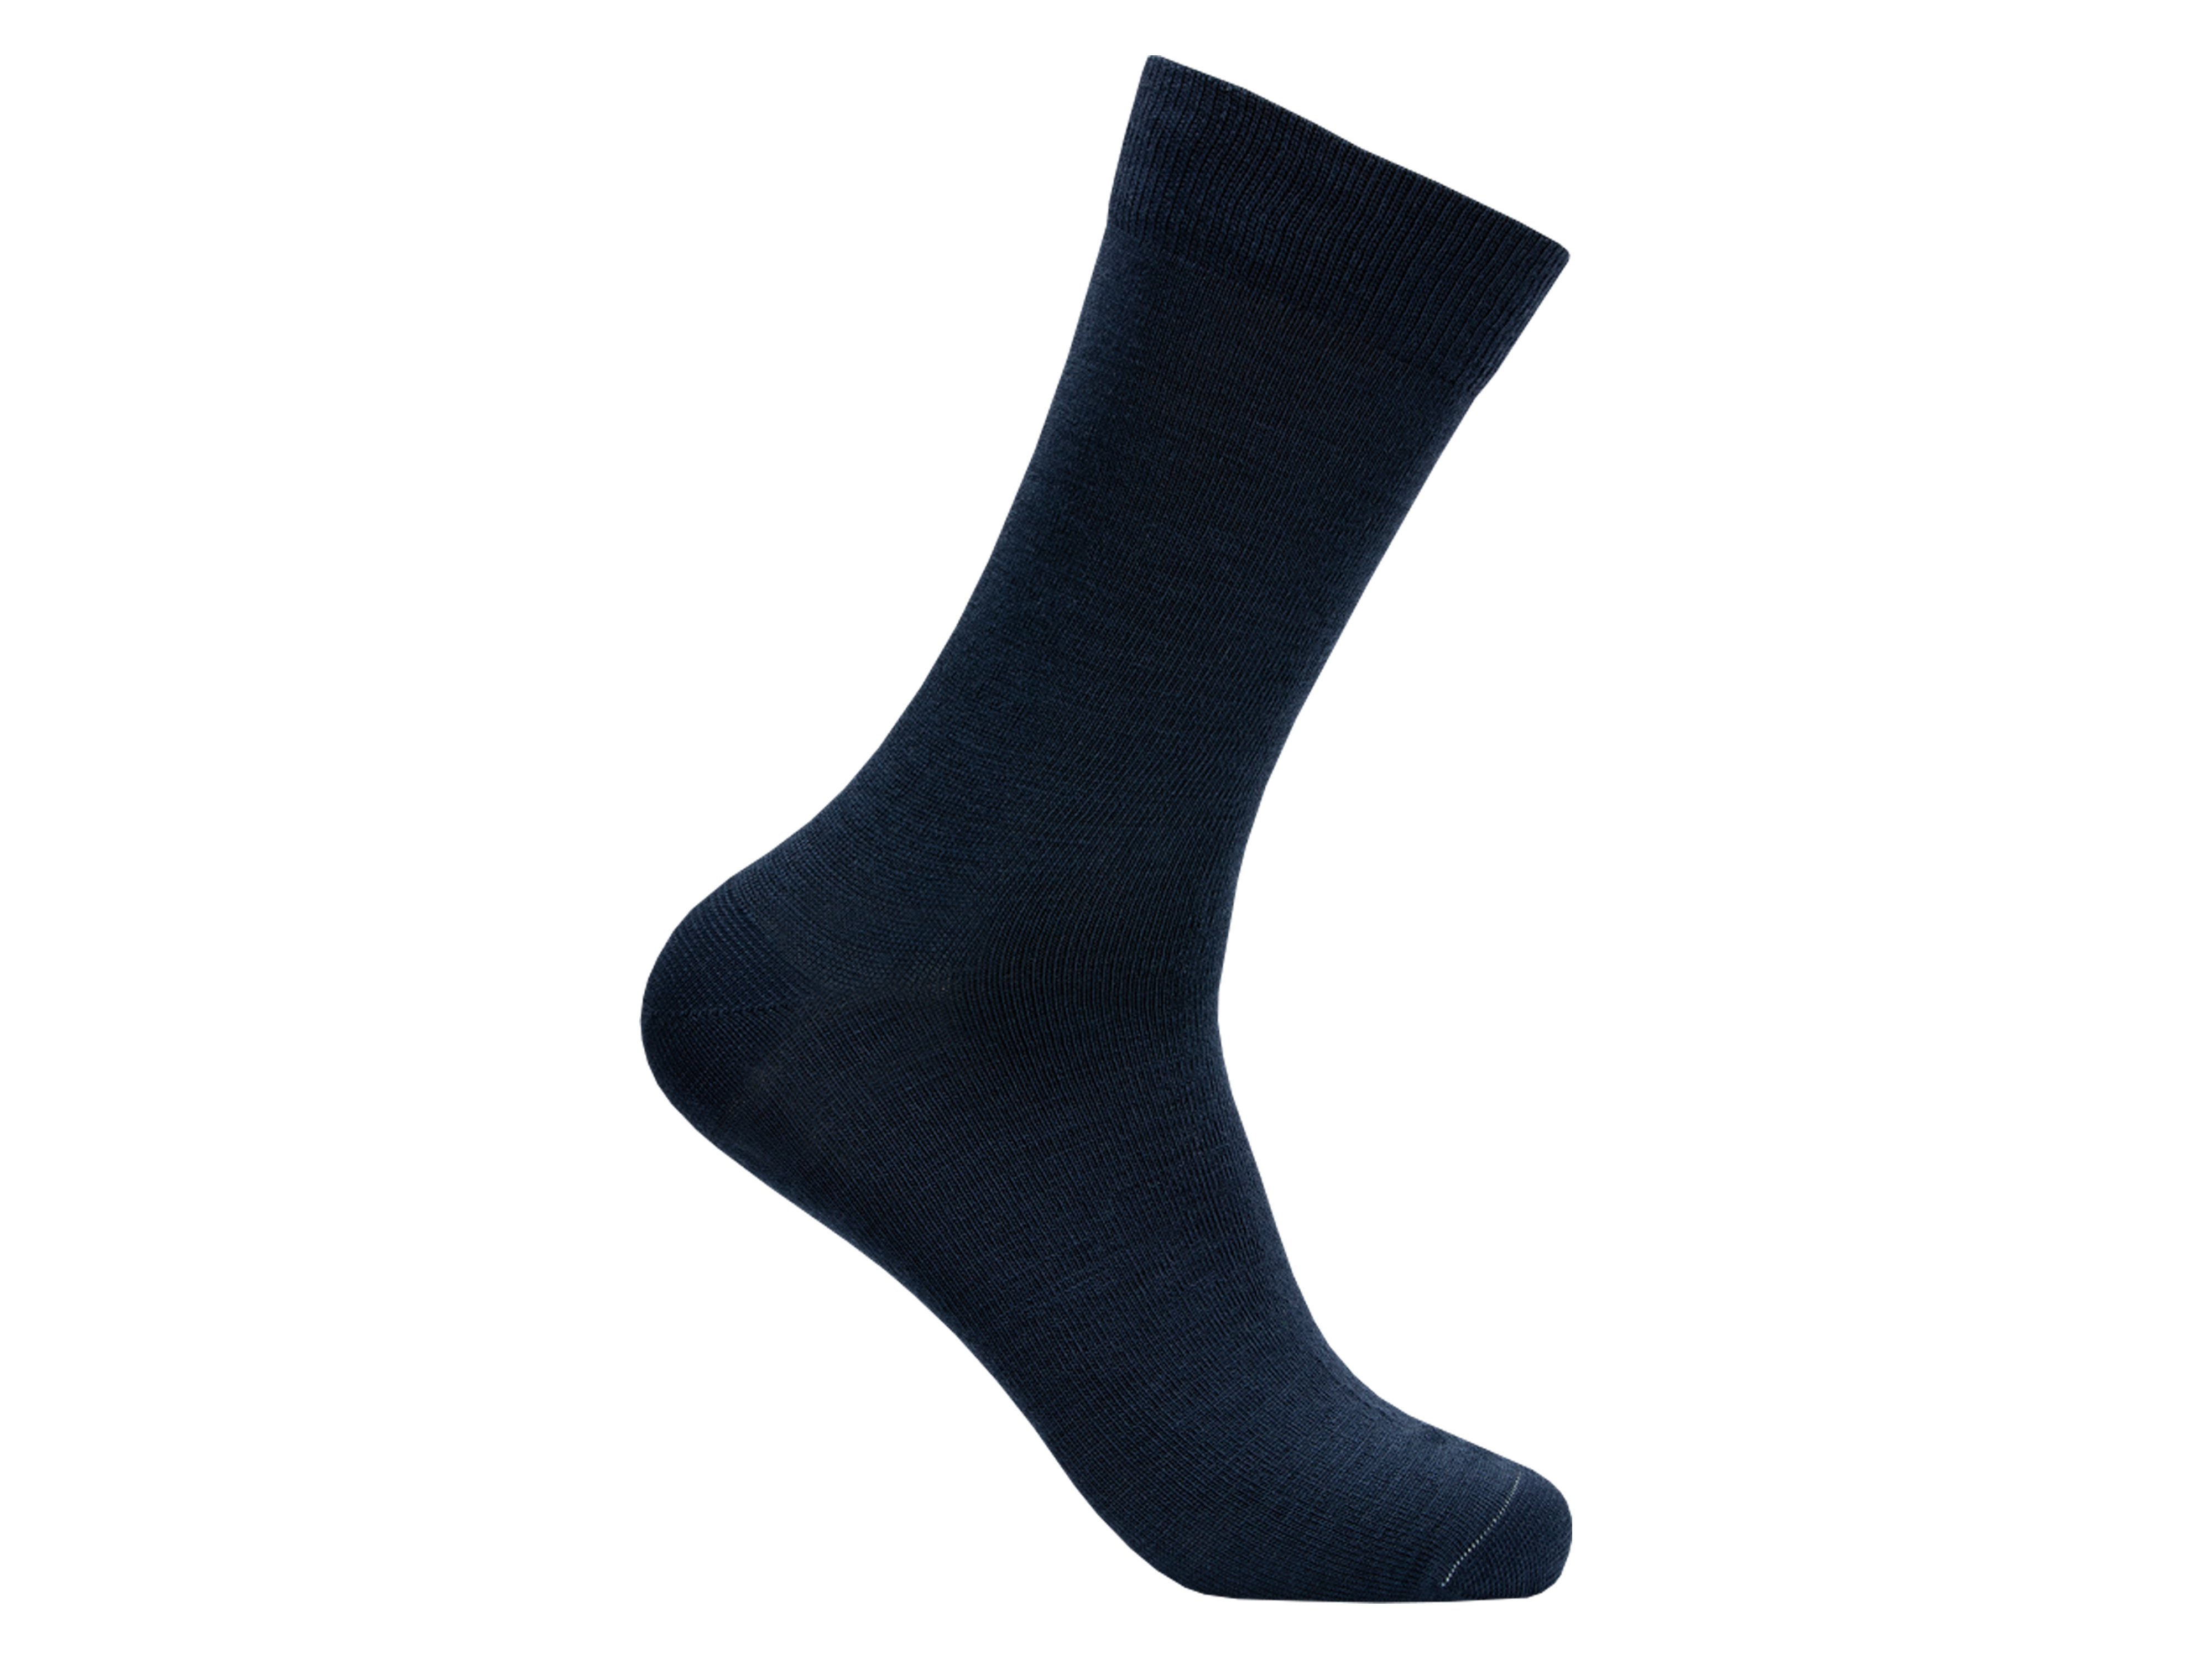 LY by Tufte Merino Sock Sky Captain, Størrelse 36-40, 1 par.